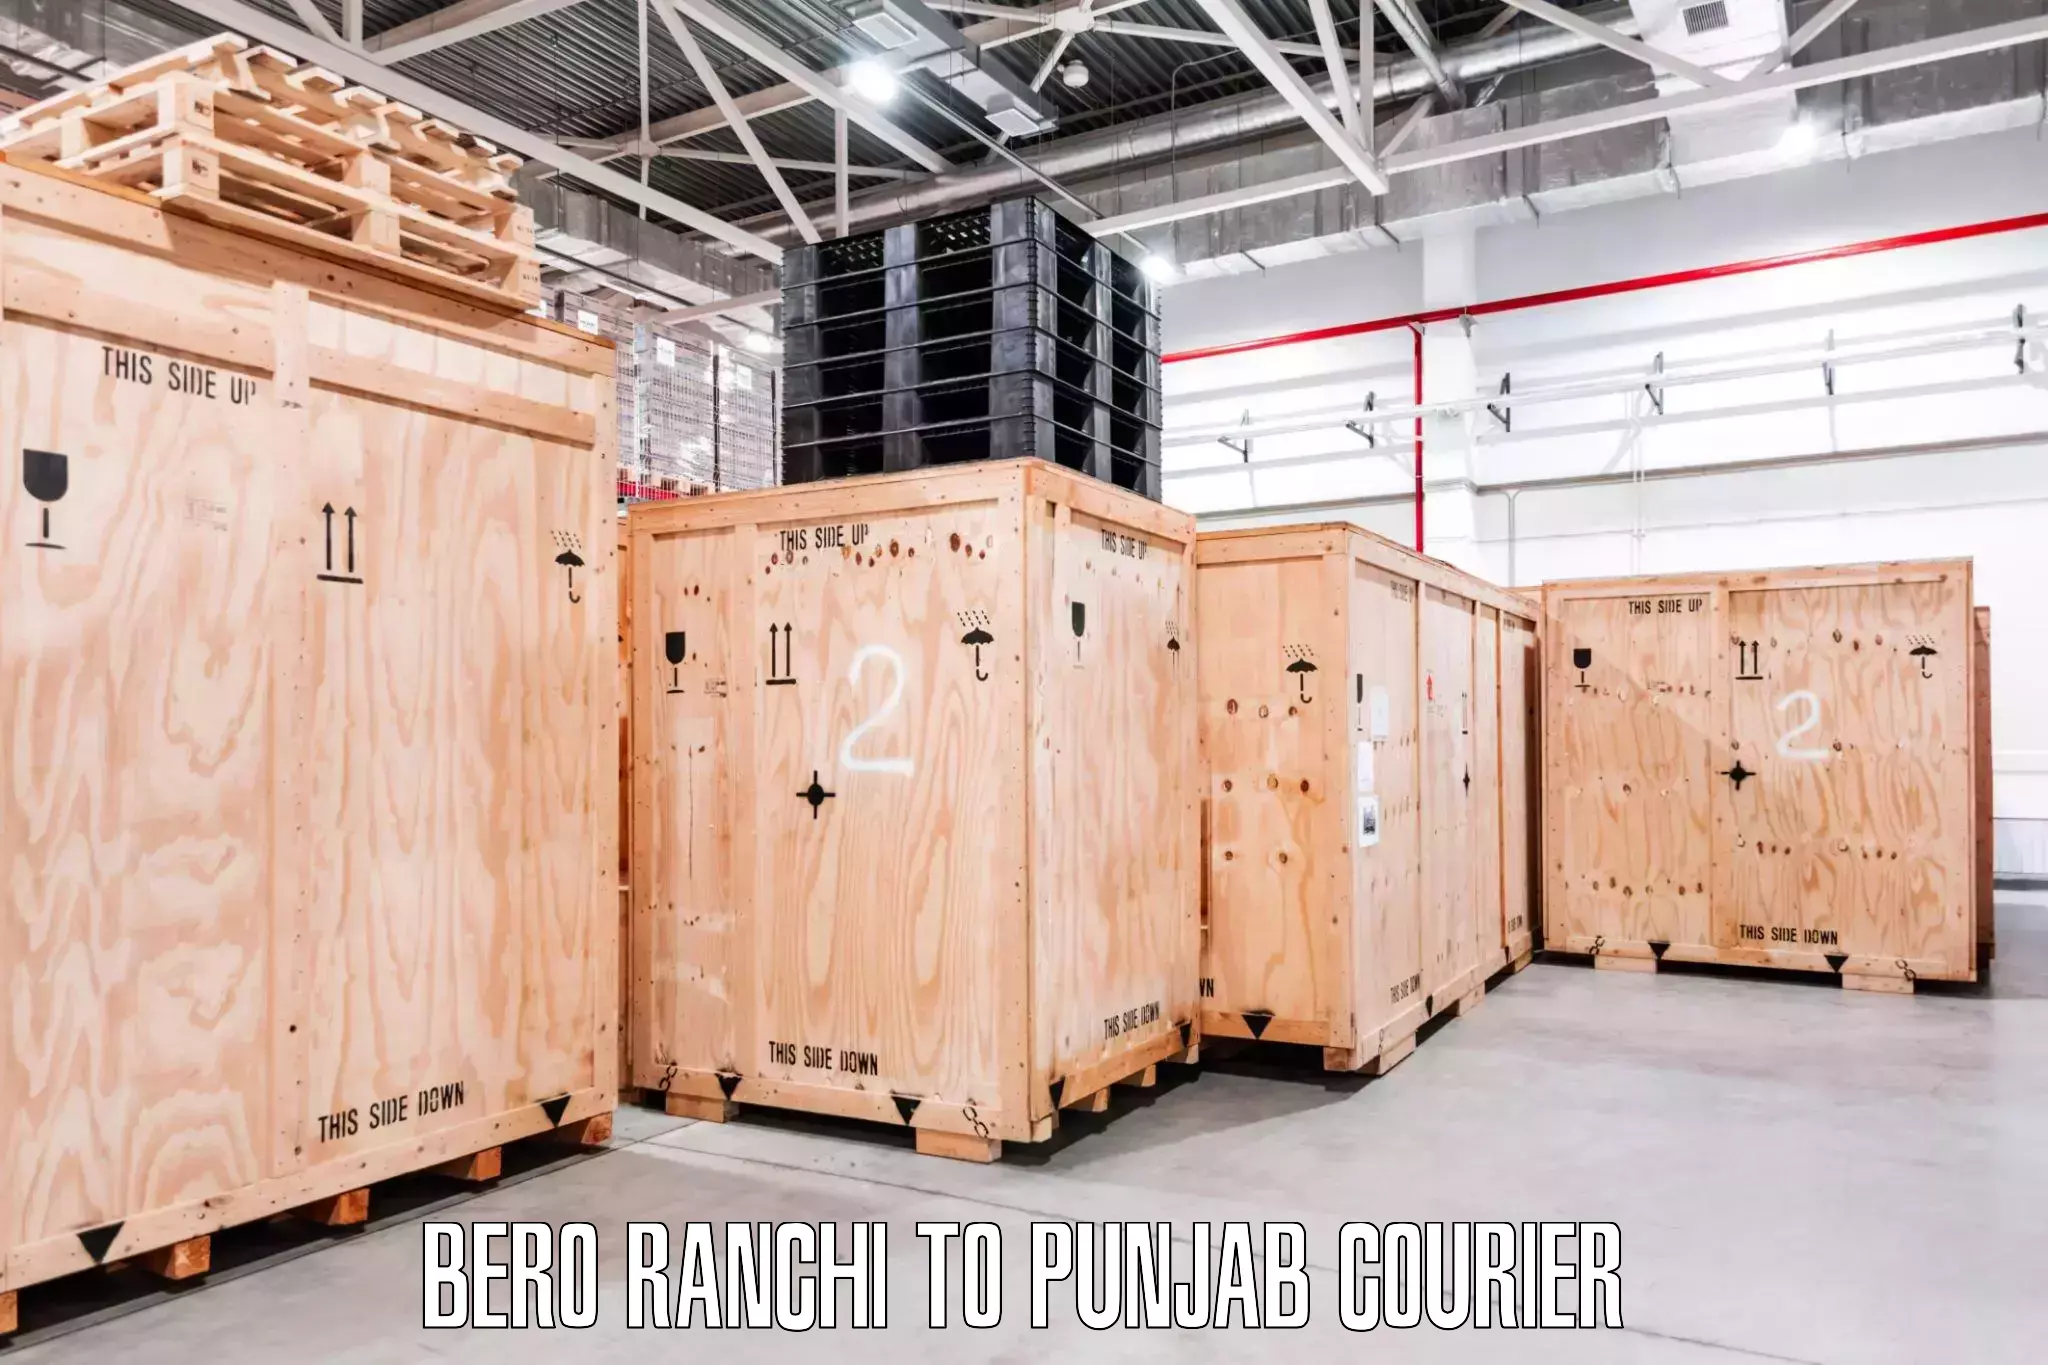 Home goods moving Bero Ranchi to Punjab